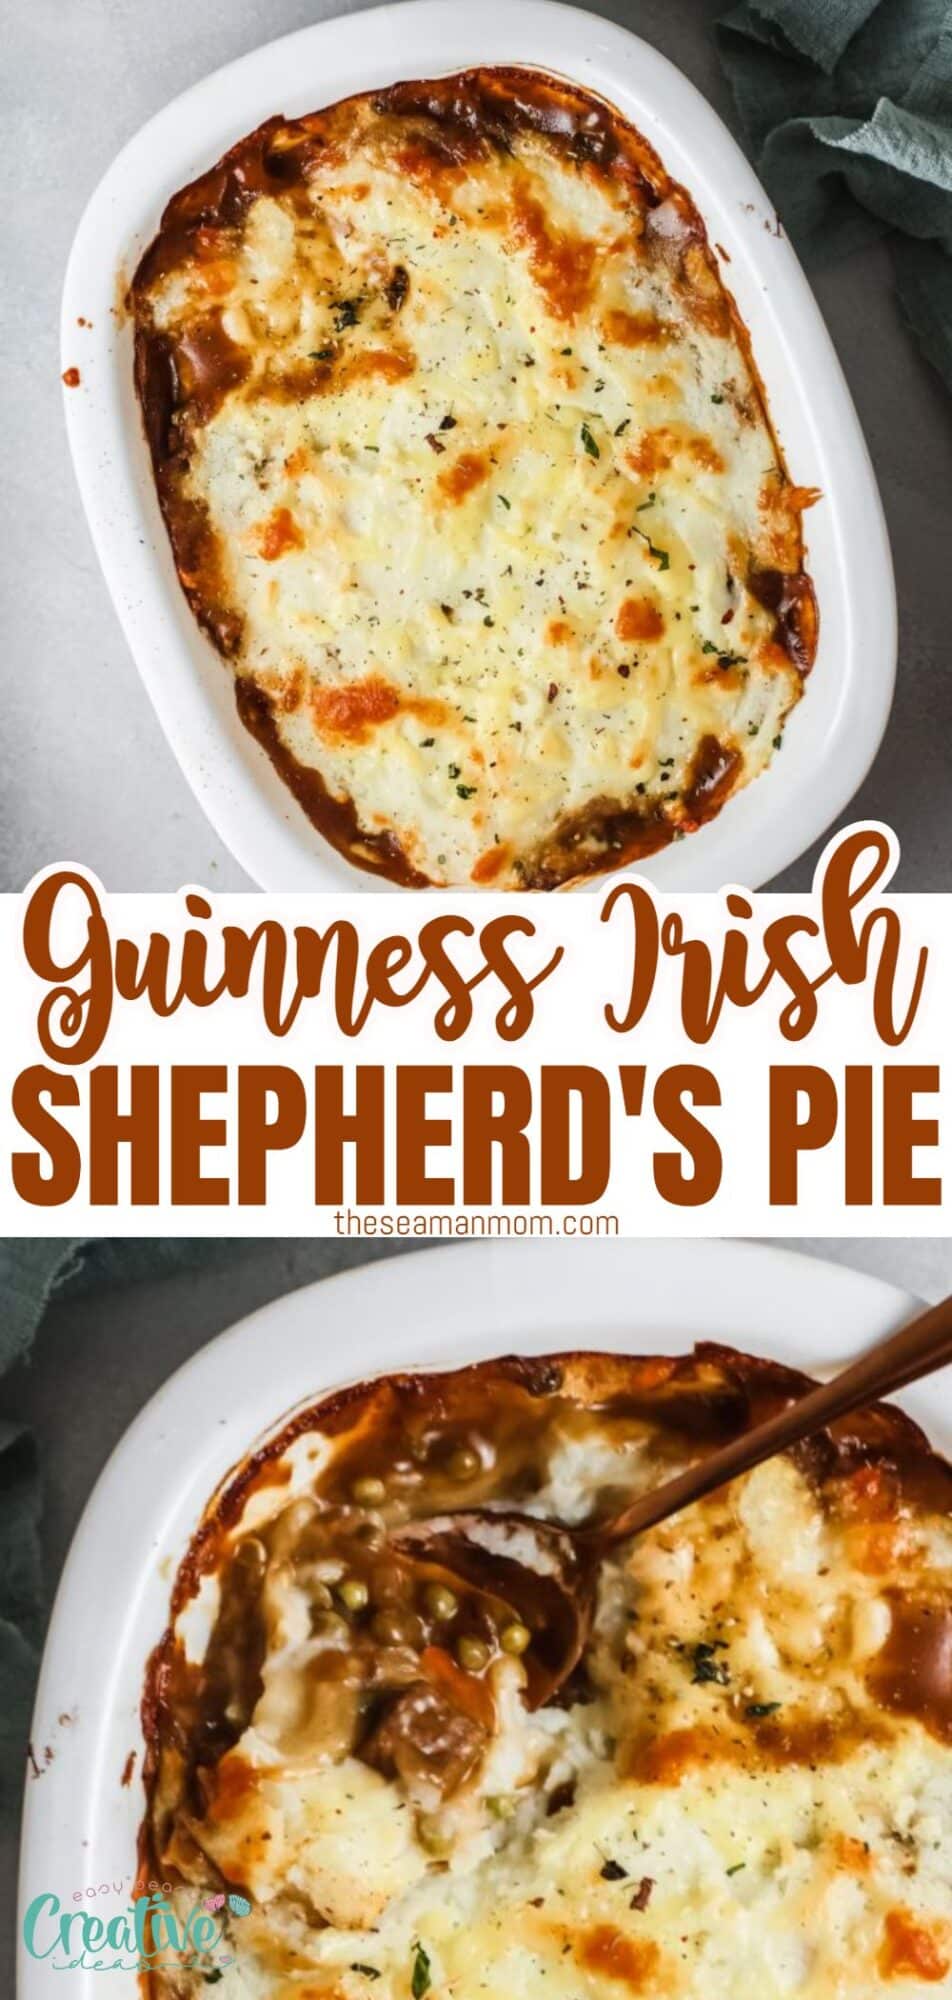 Irish Guinness Shepherd's pie